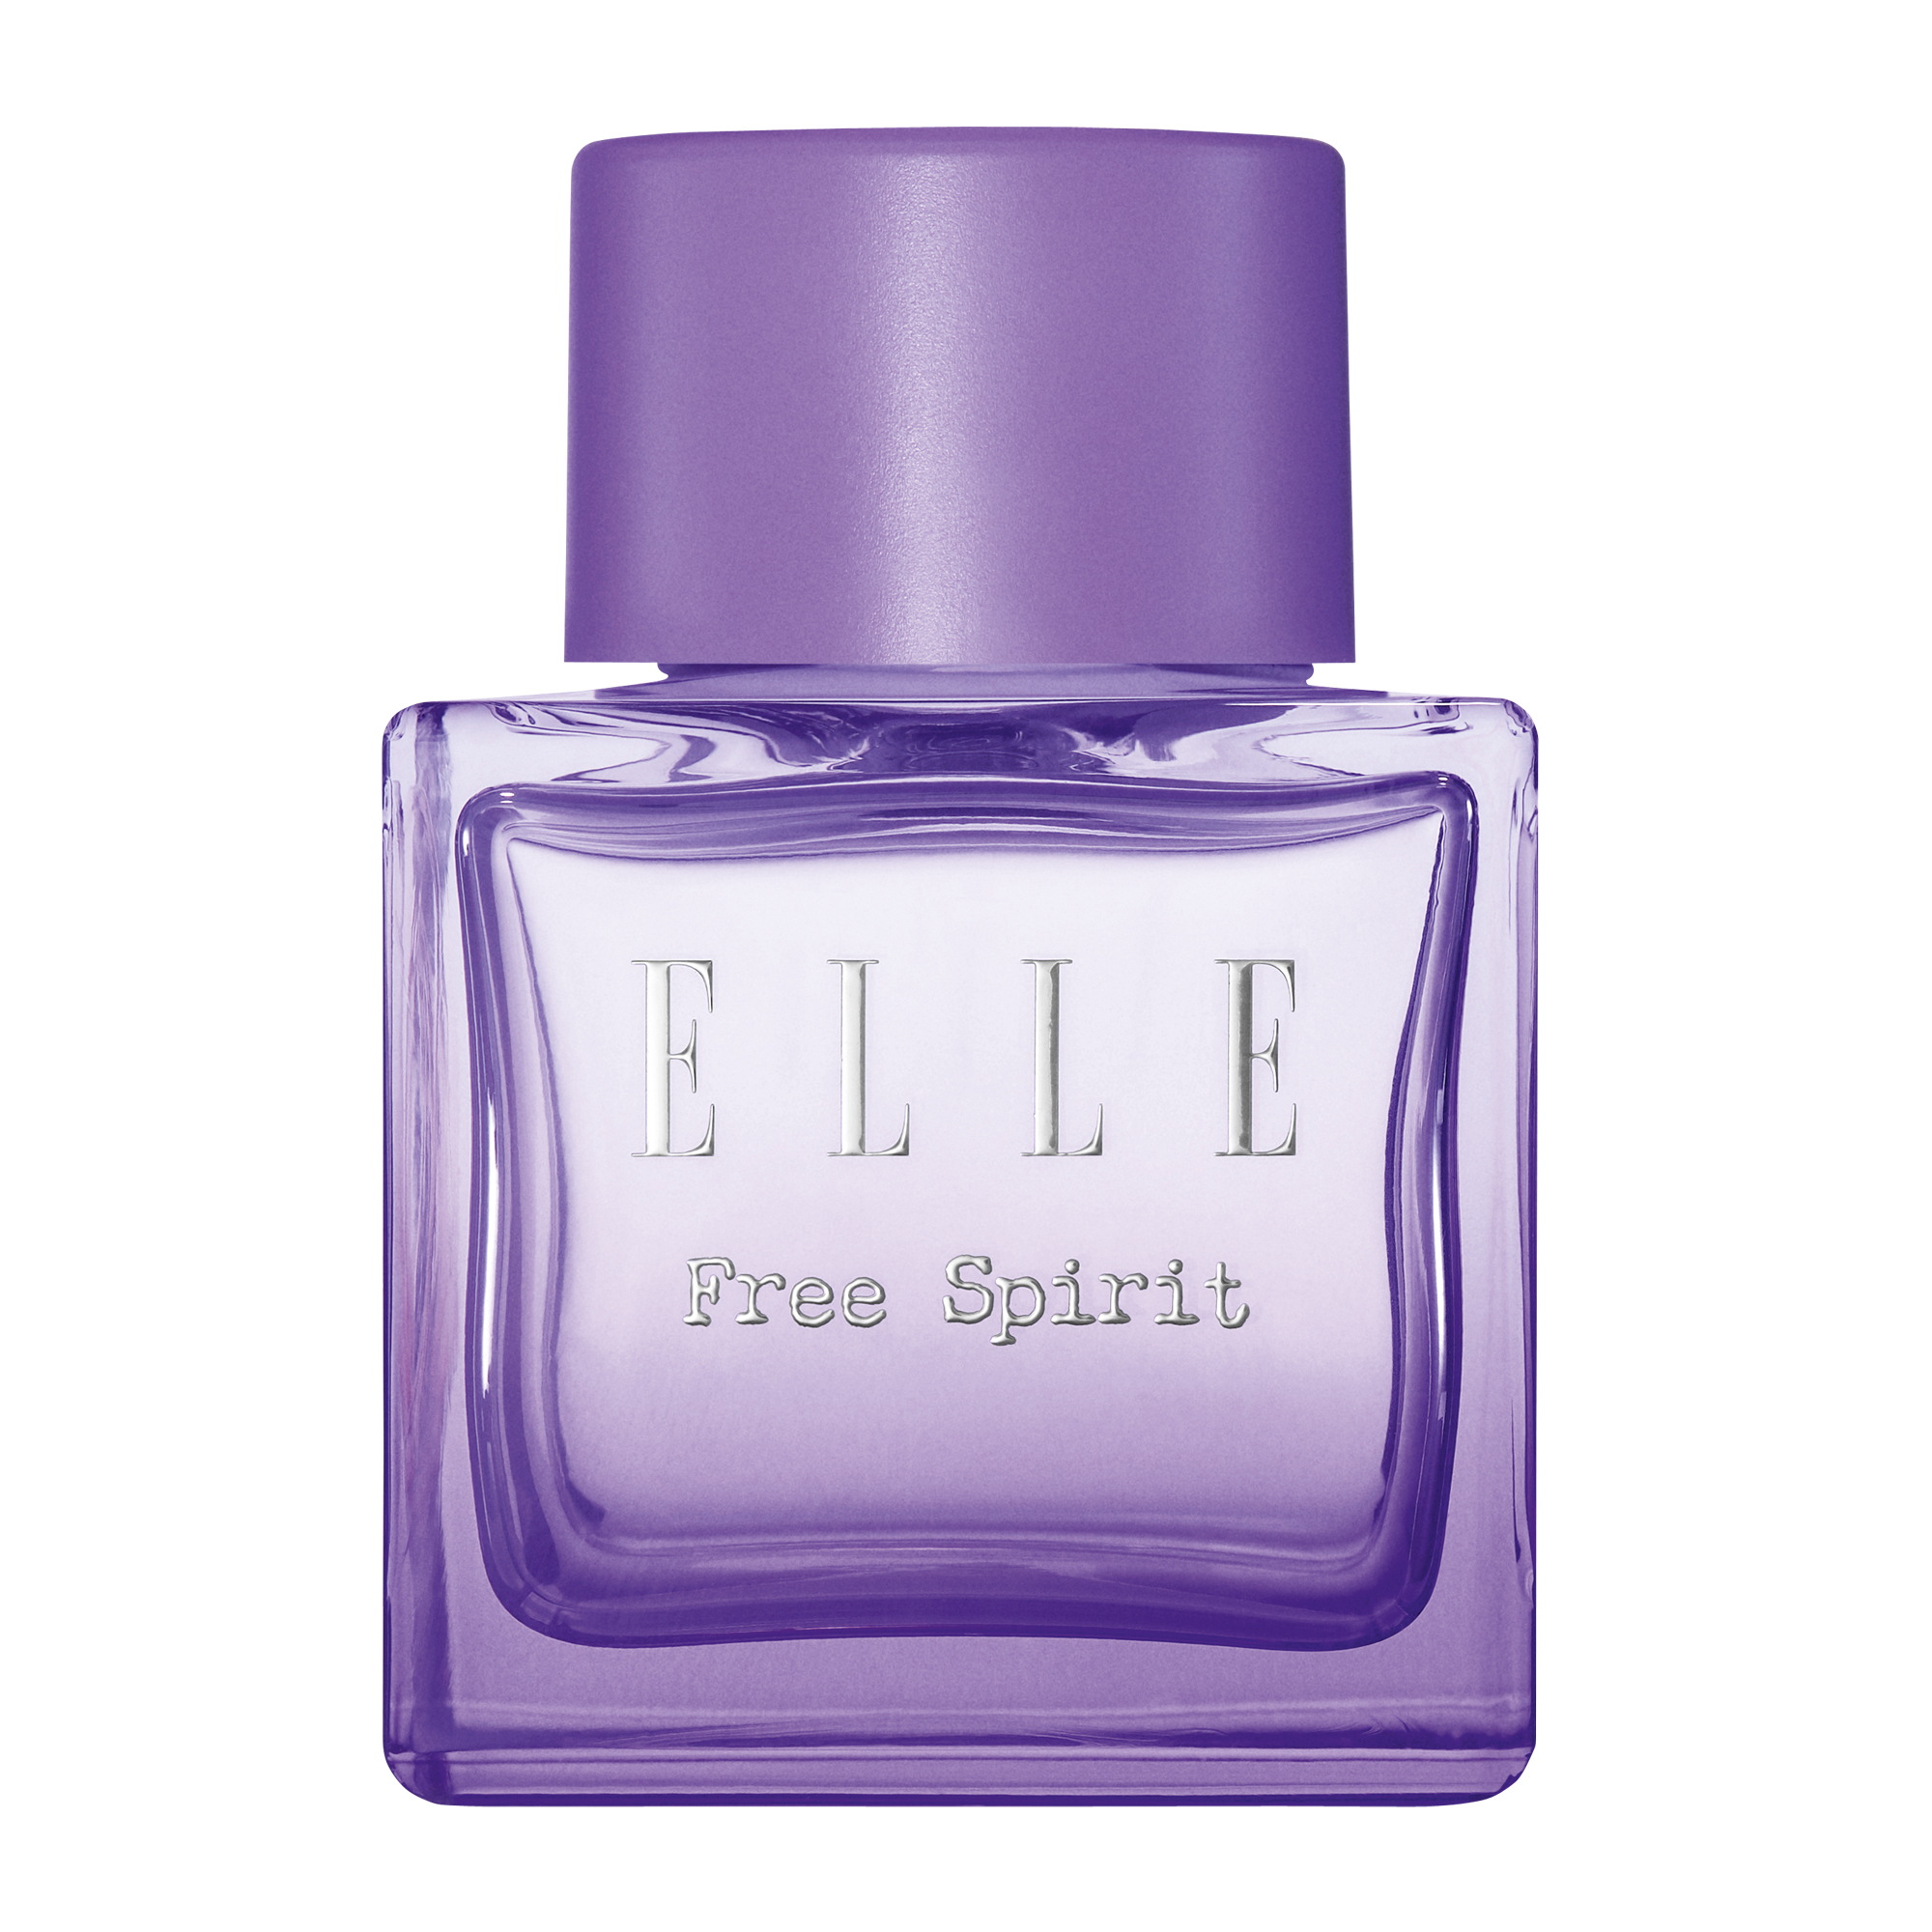 Free Spirit Eau de Parfum